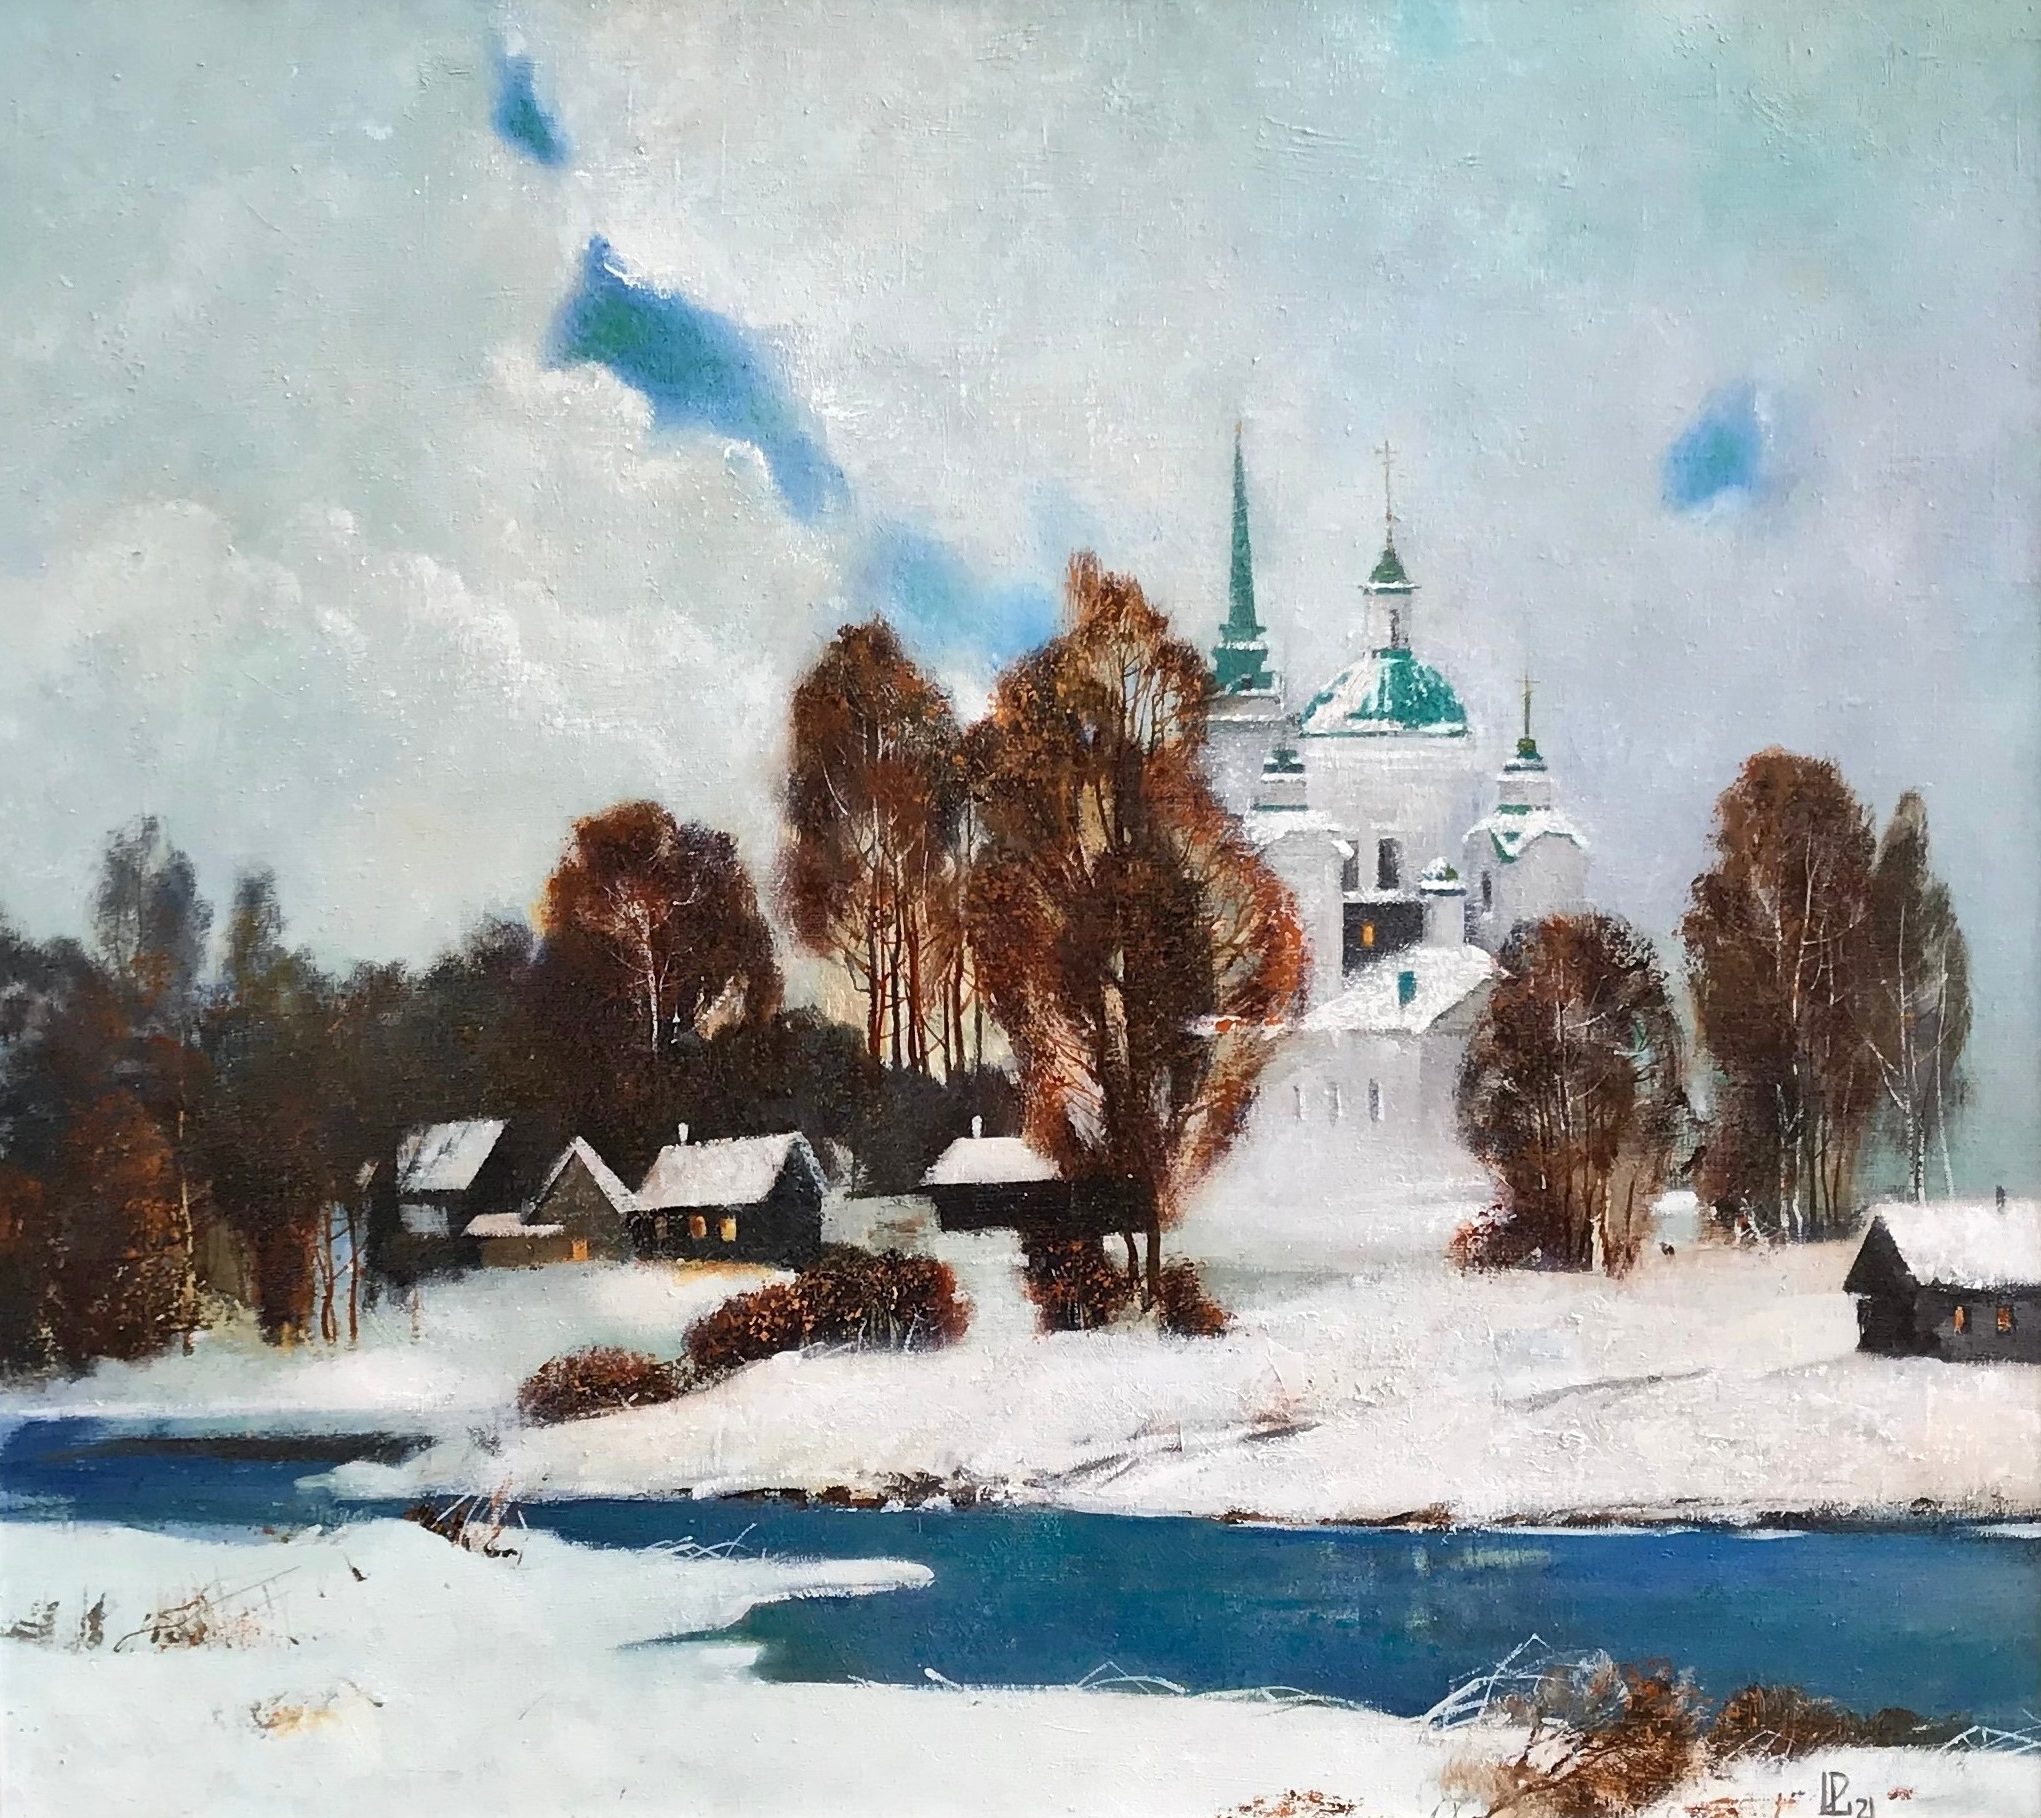 Silver Day - 1, Evgeniya Davletshina, Buy the painting Oil